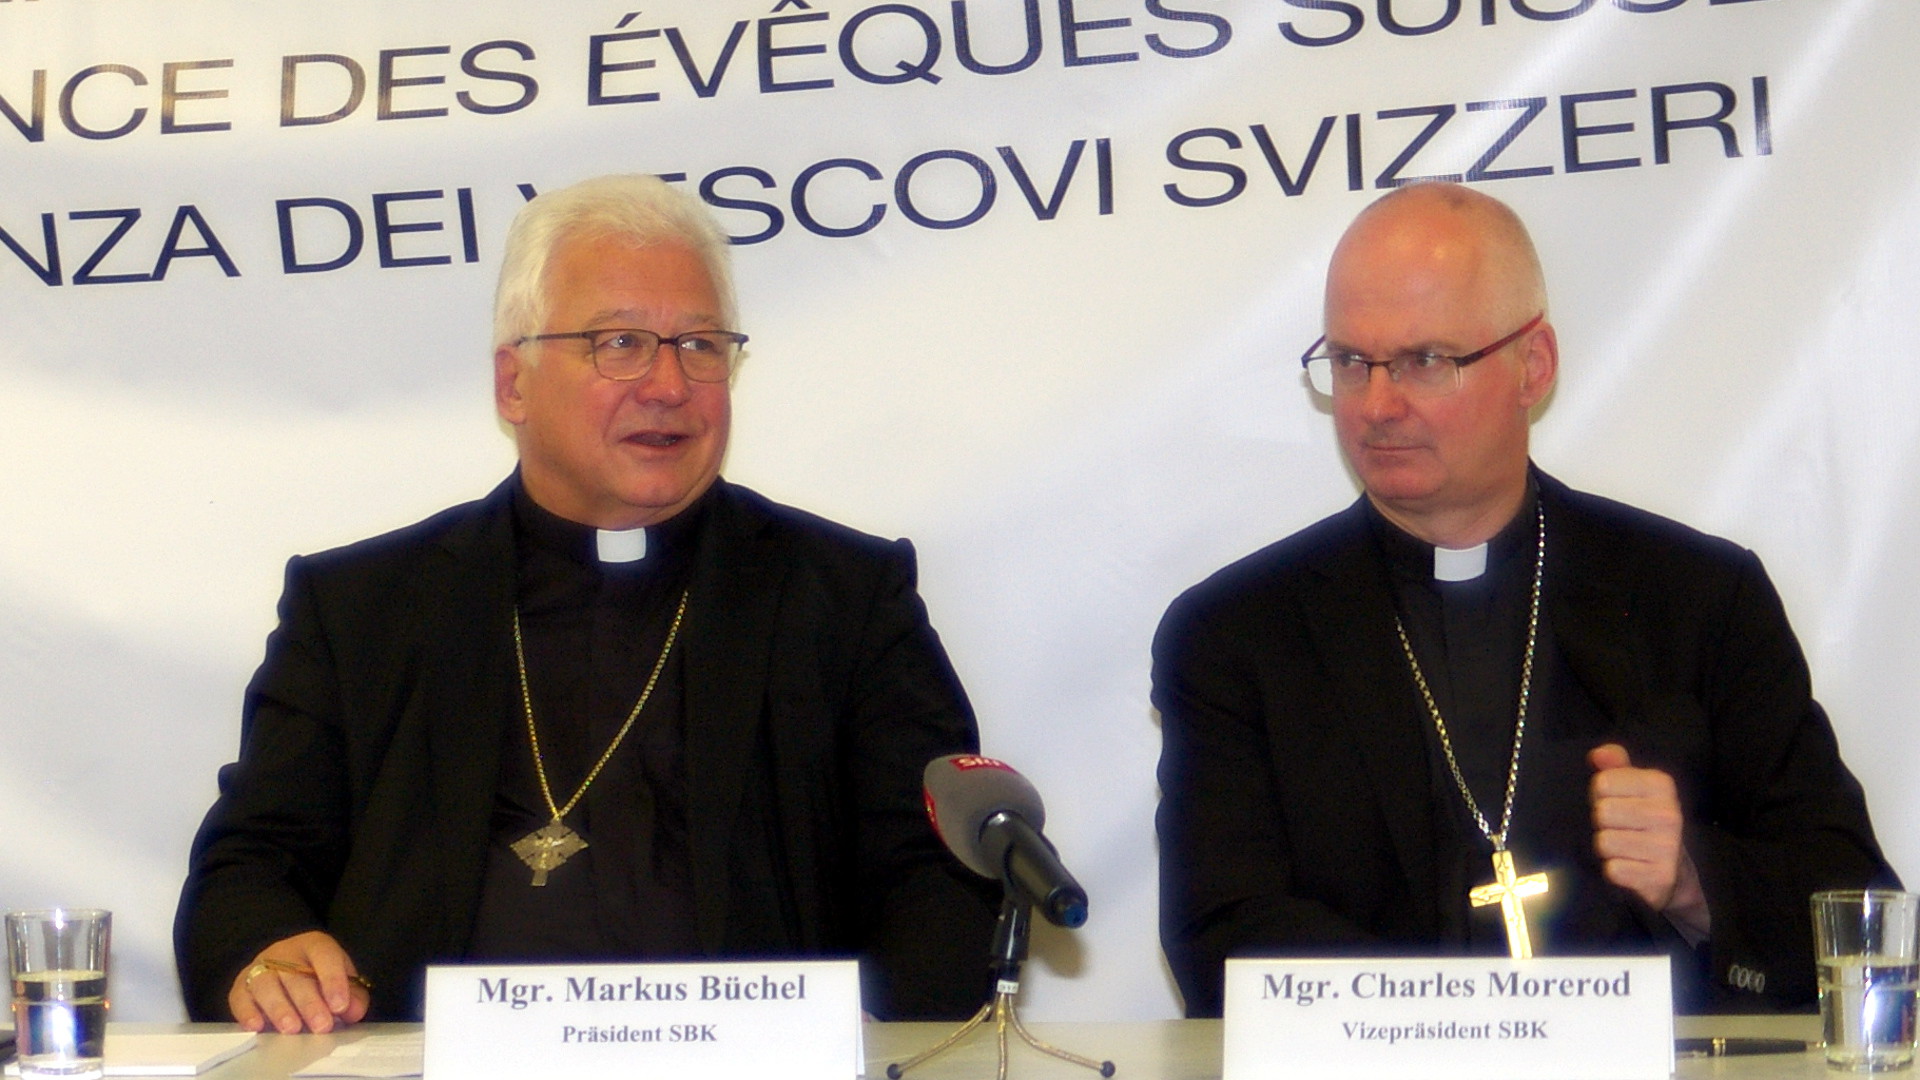 Bischof Markus Büchel, Präsident der Schweizer Bischofskonferenz (SBK), und sein designierter Nachfolger als SBK-Präsident, Bischof Charles Morerod